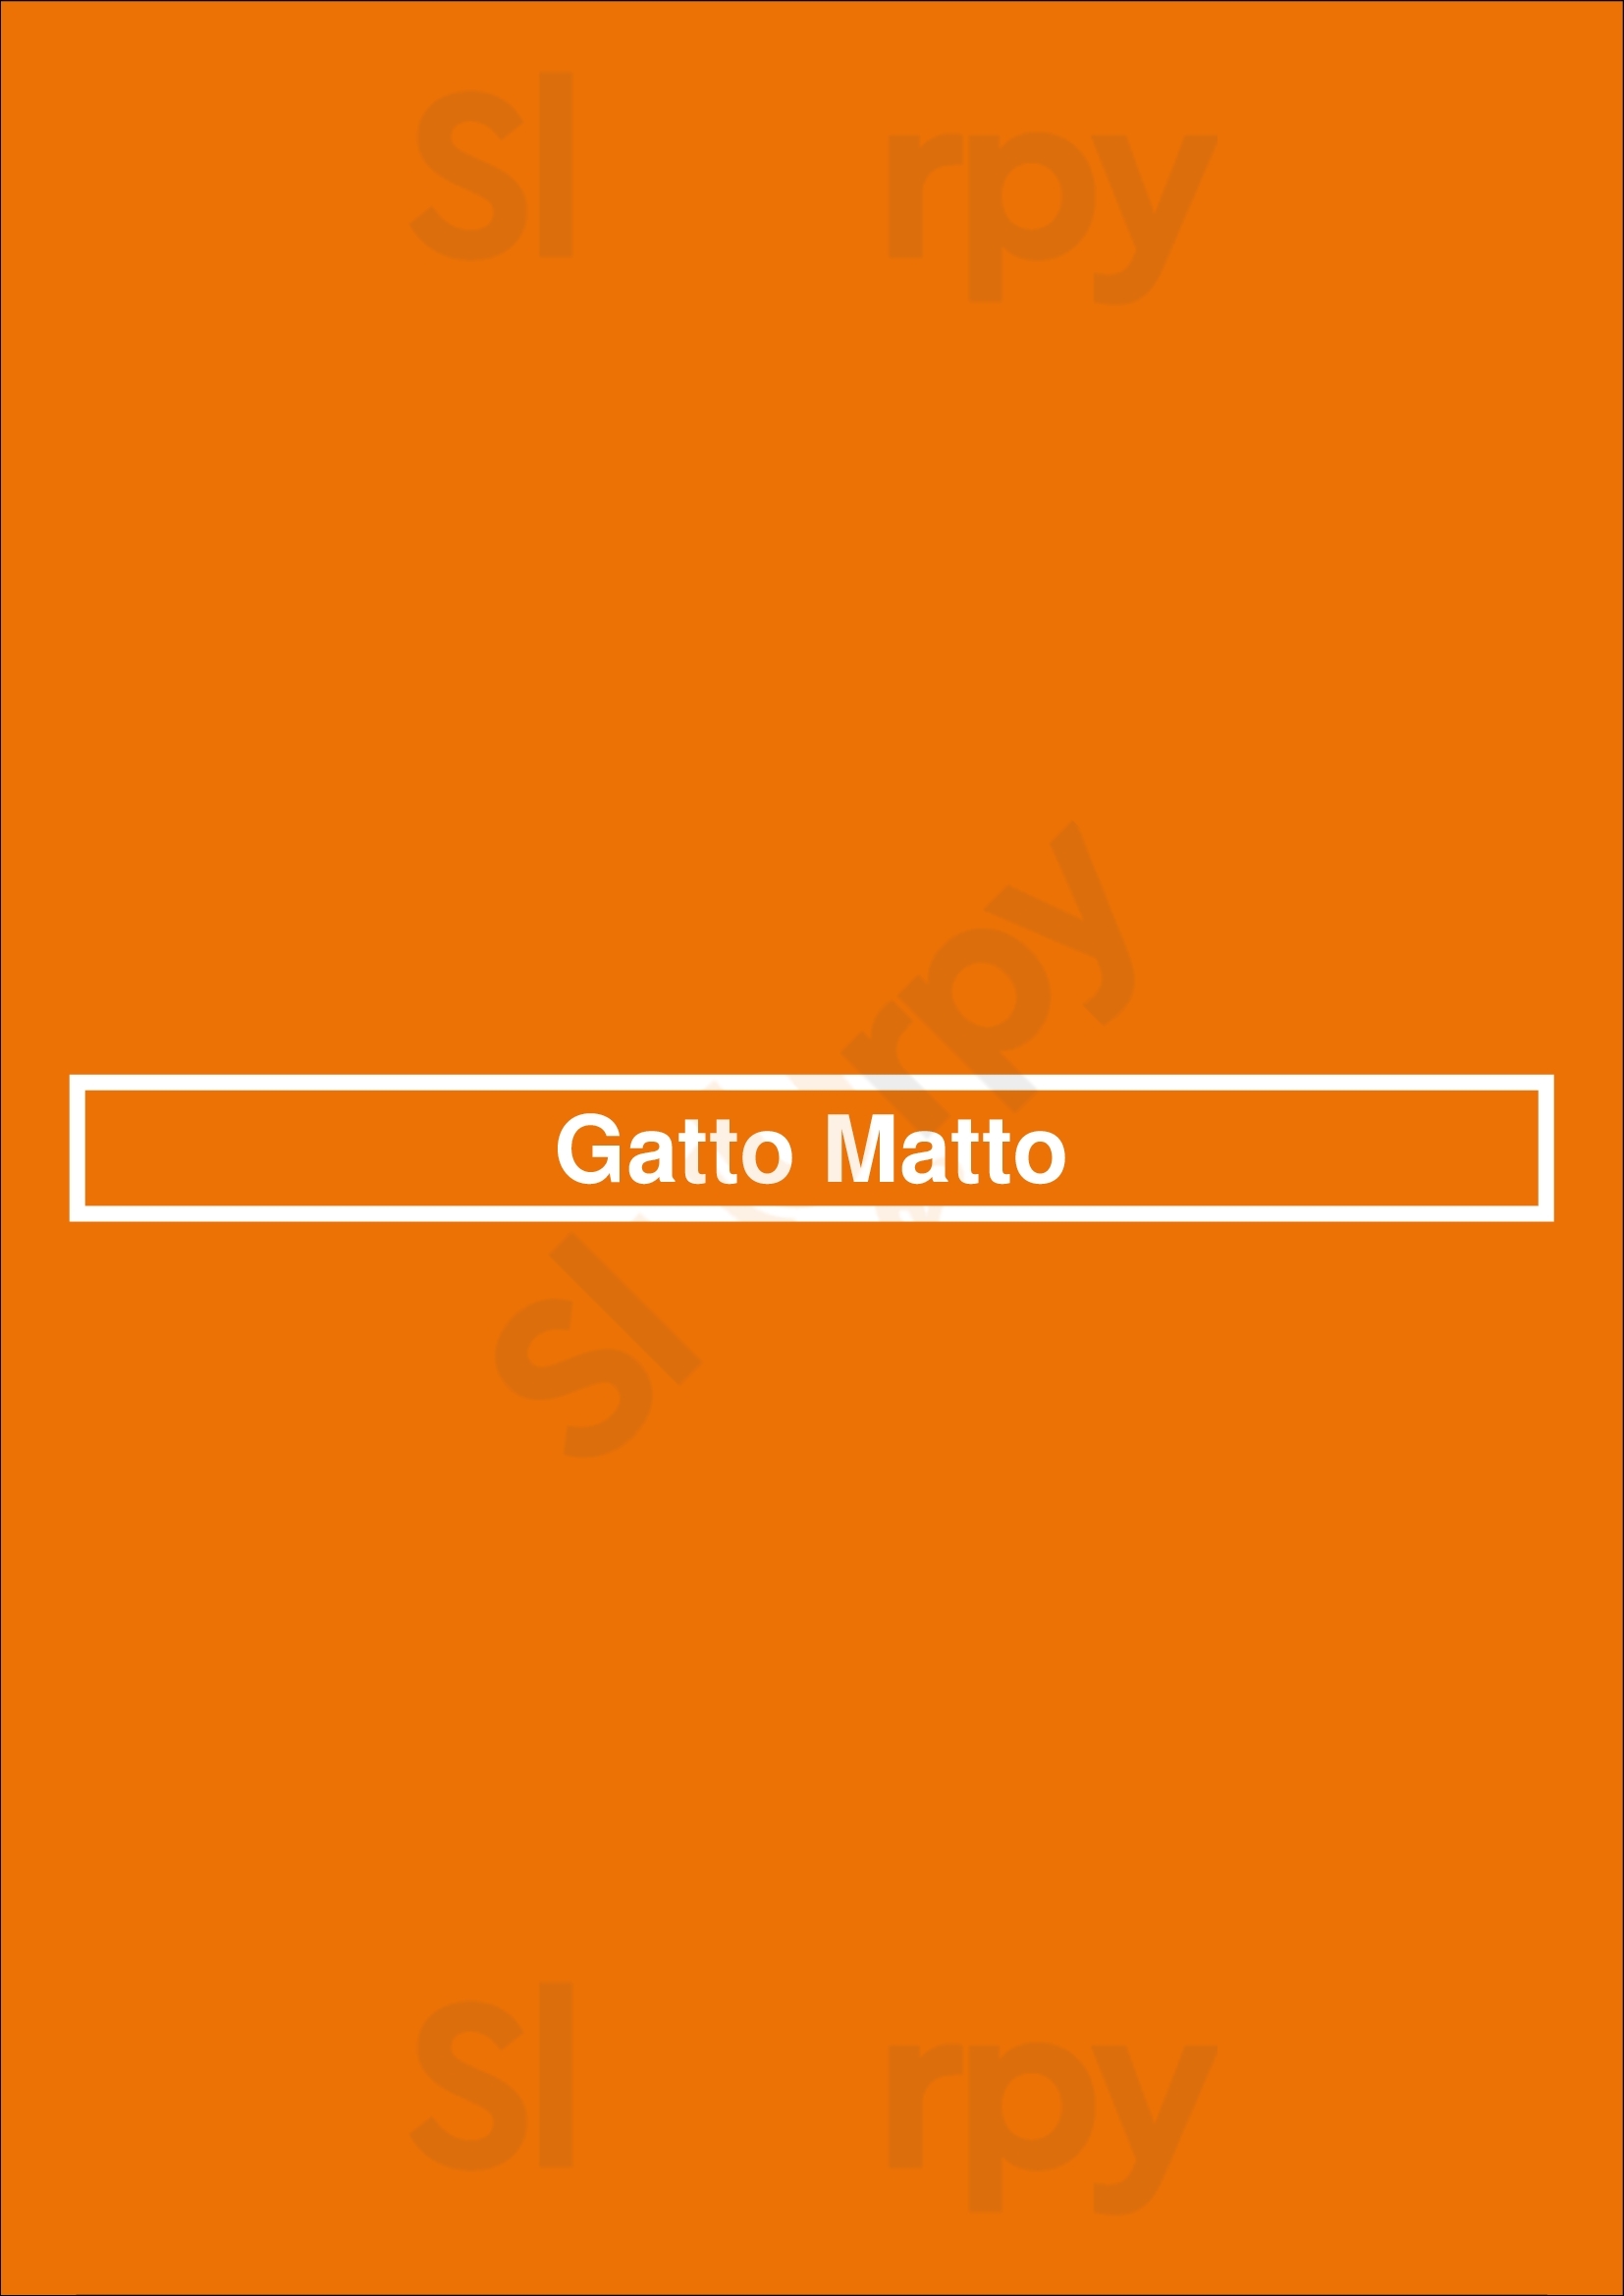 Gatto Matto Laval Menu - 1